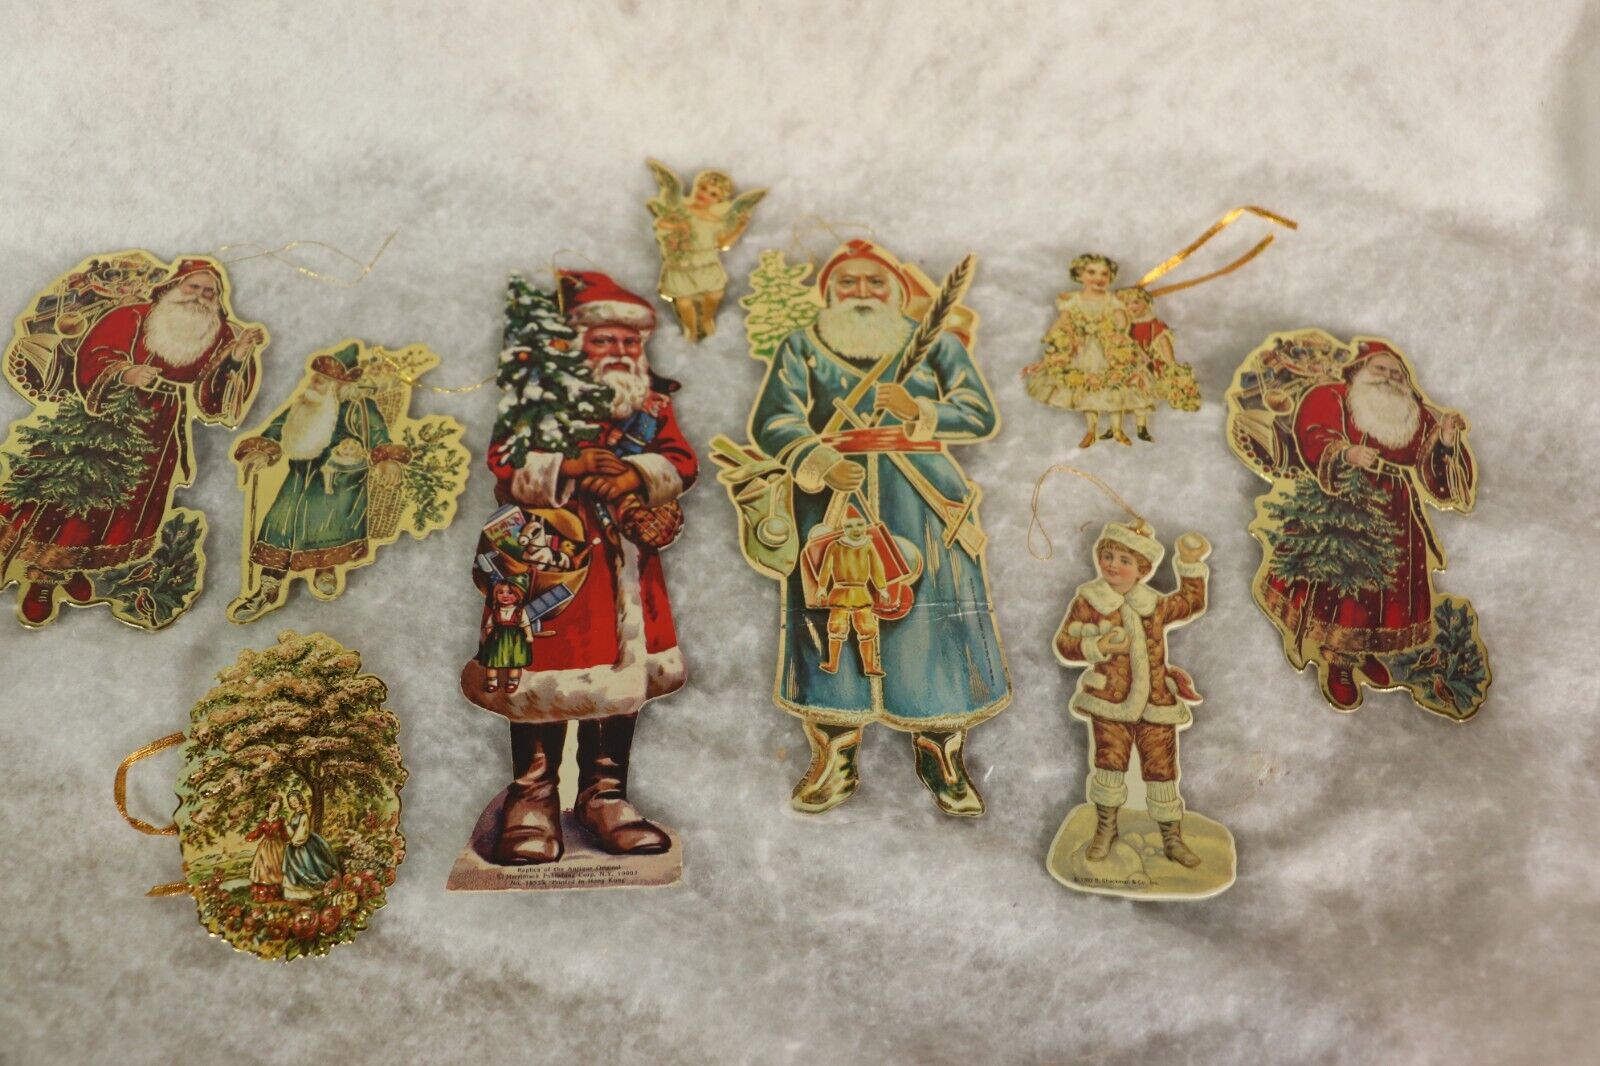 Lot of 9 Vintage Merrimack, Shackman Die Cut Paper Board Christmas Ornaments